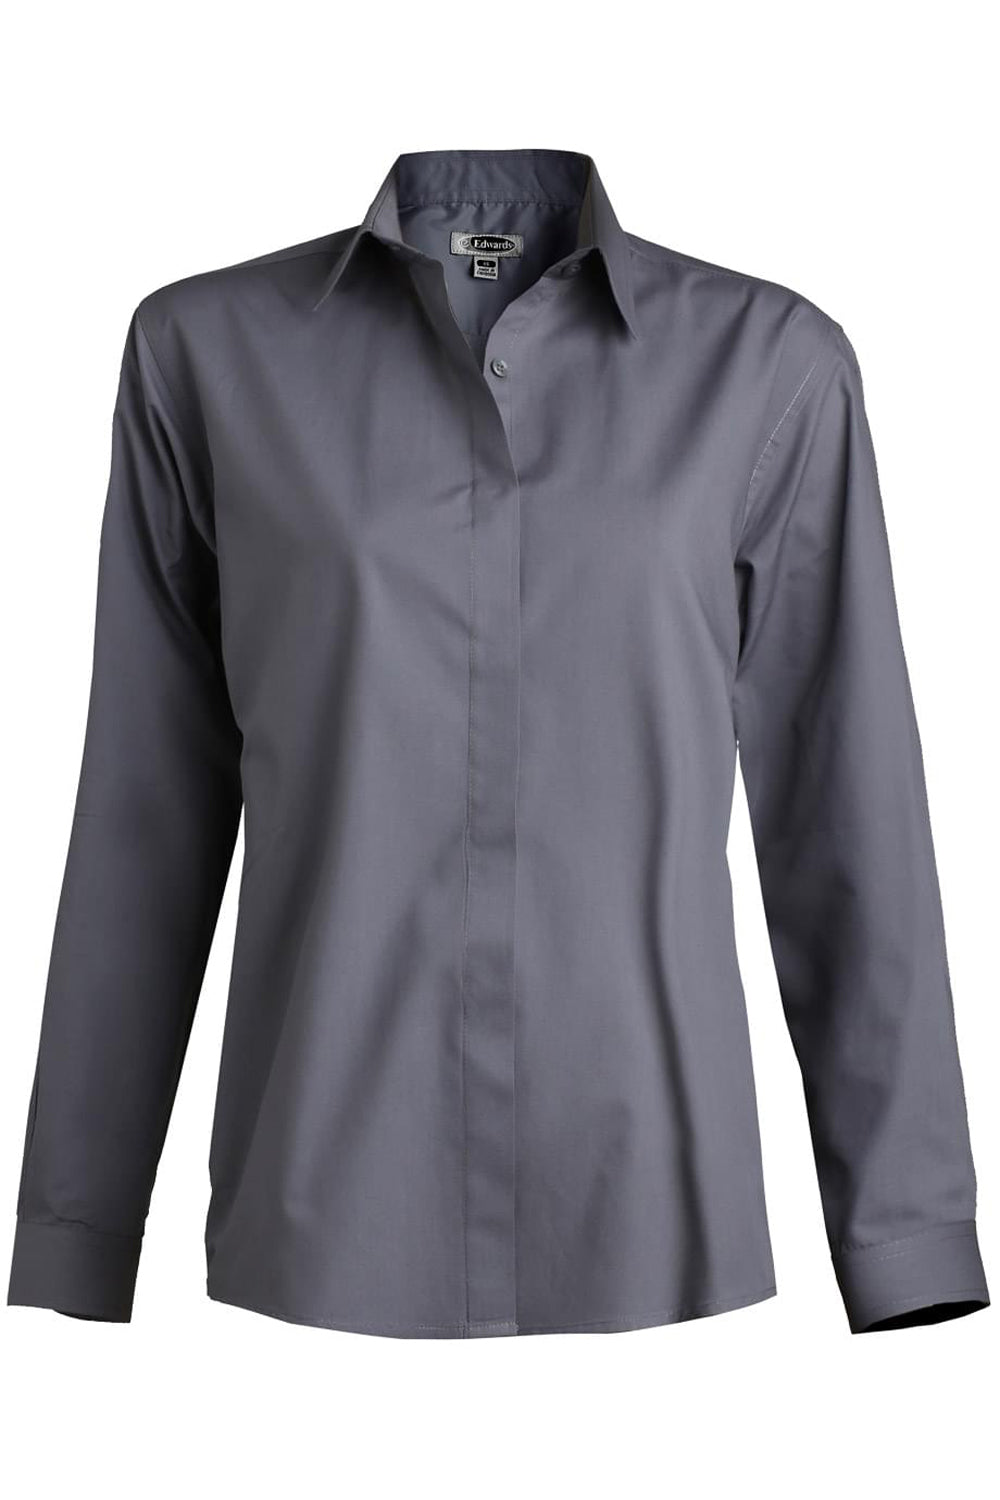 Edwards XXS Ladies' Café Broadcloth Shirt - Dark Grey